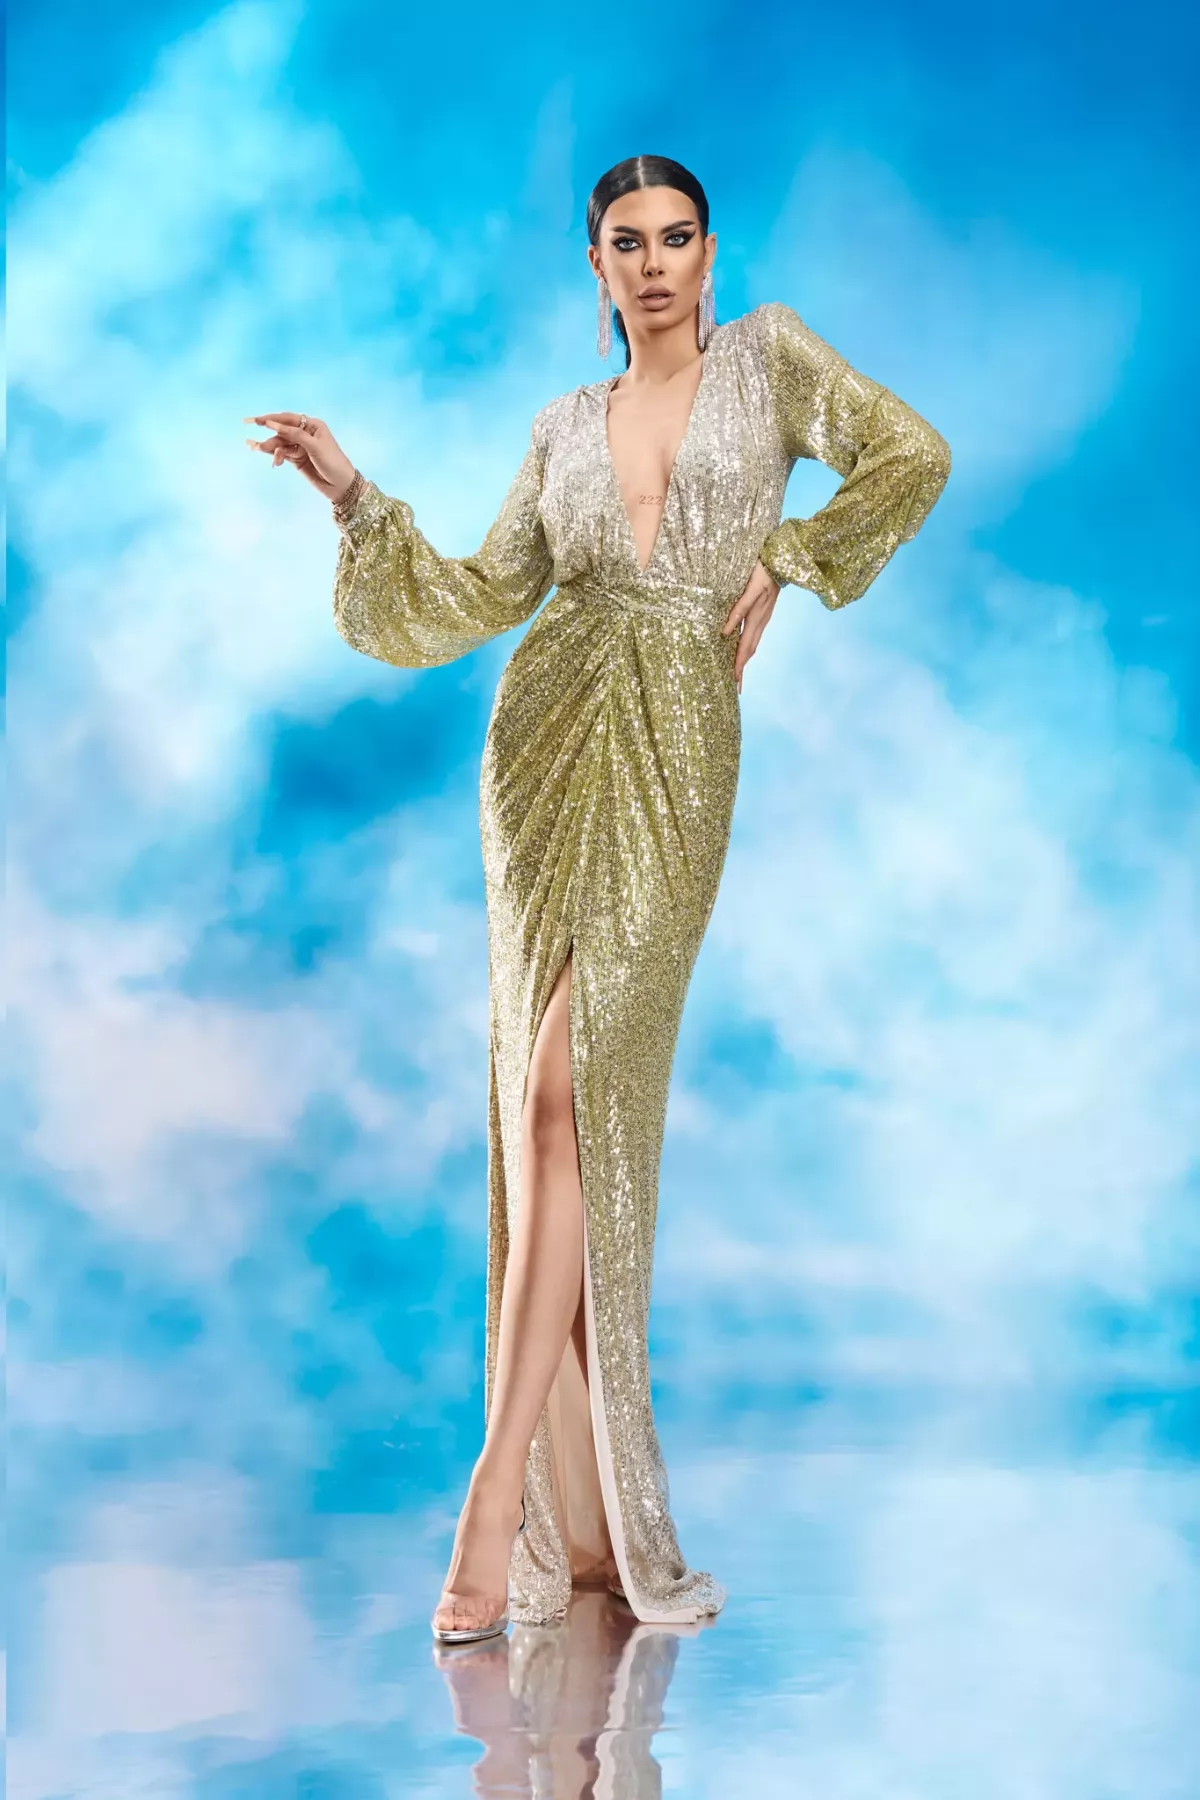 Rochie eleganta tip sirena din paiete in degrade galben cu argintiu BBY 20066